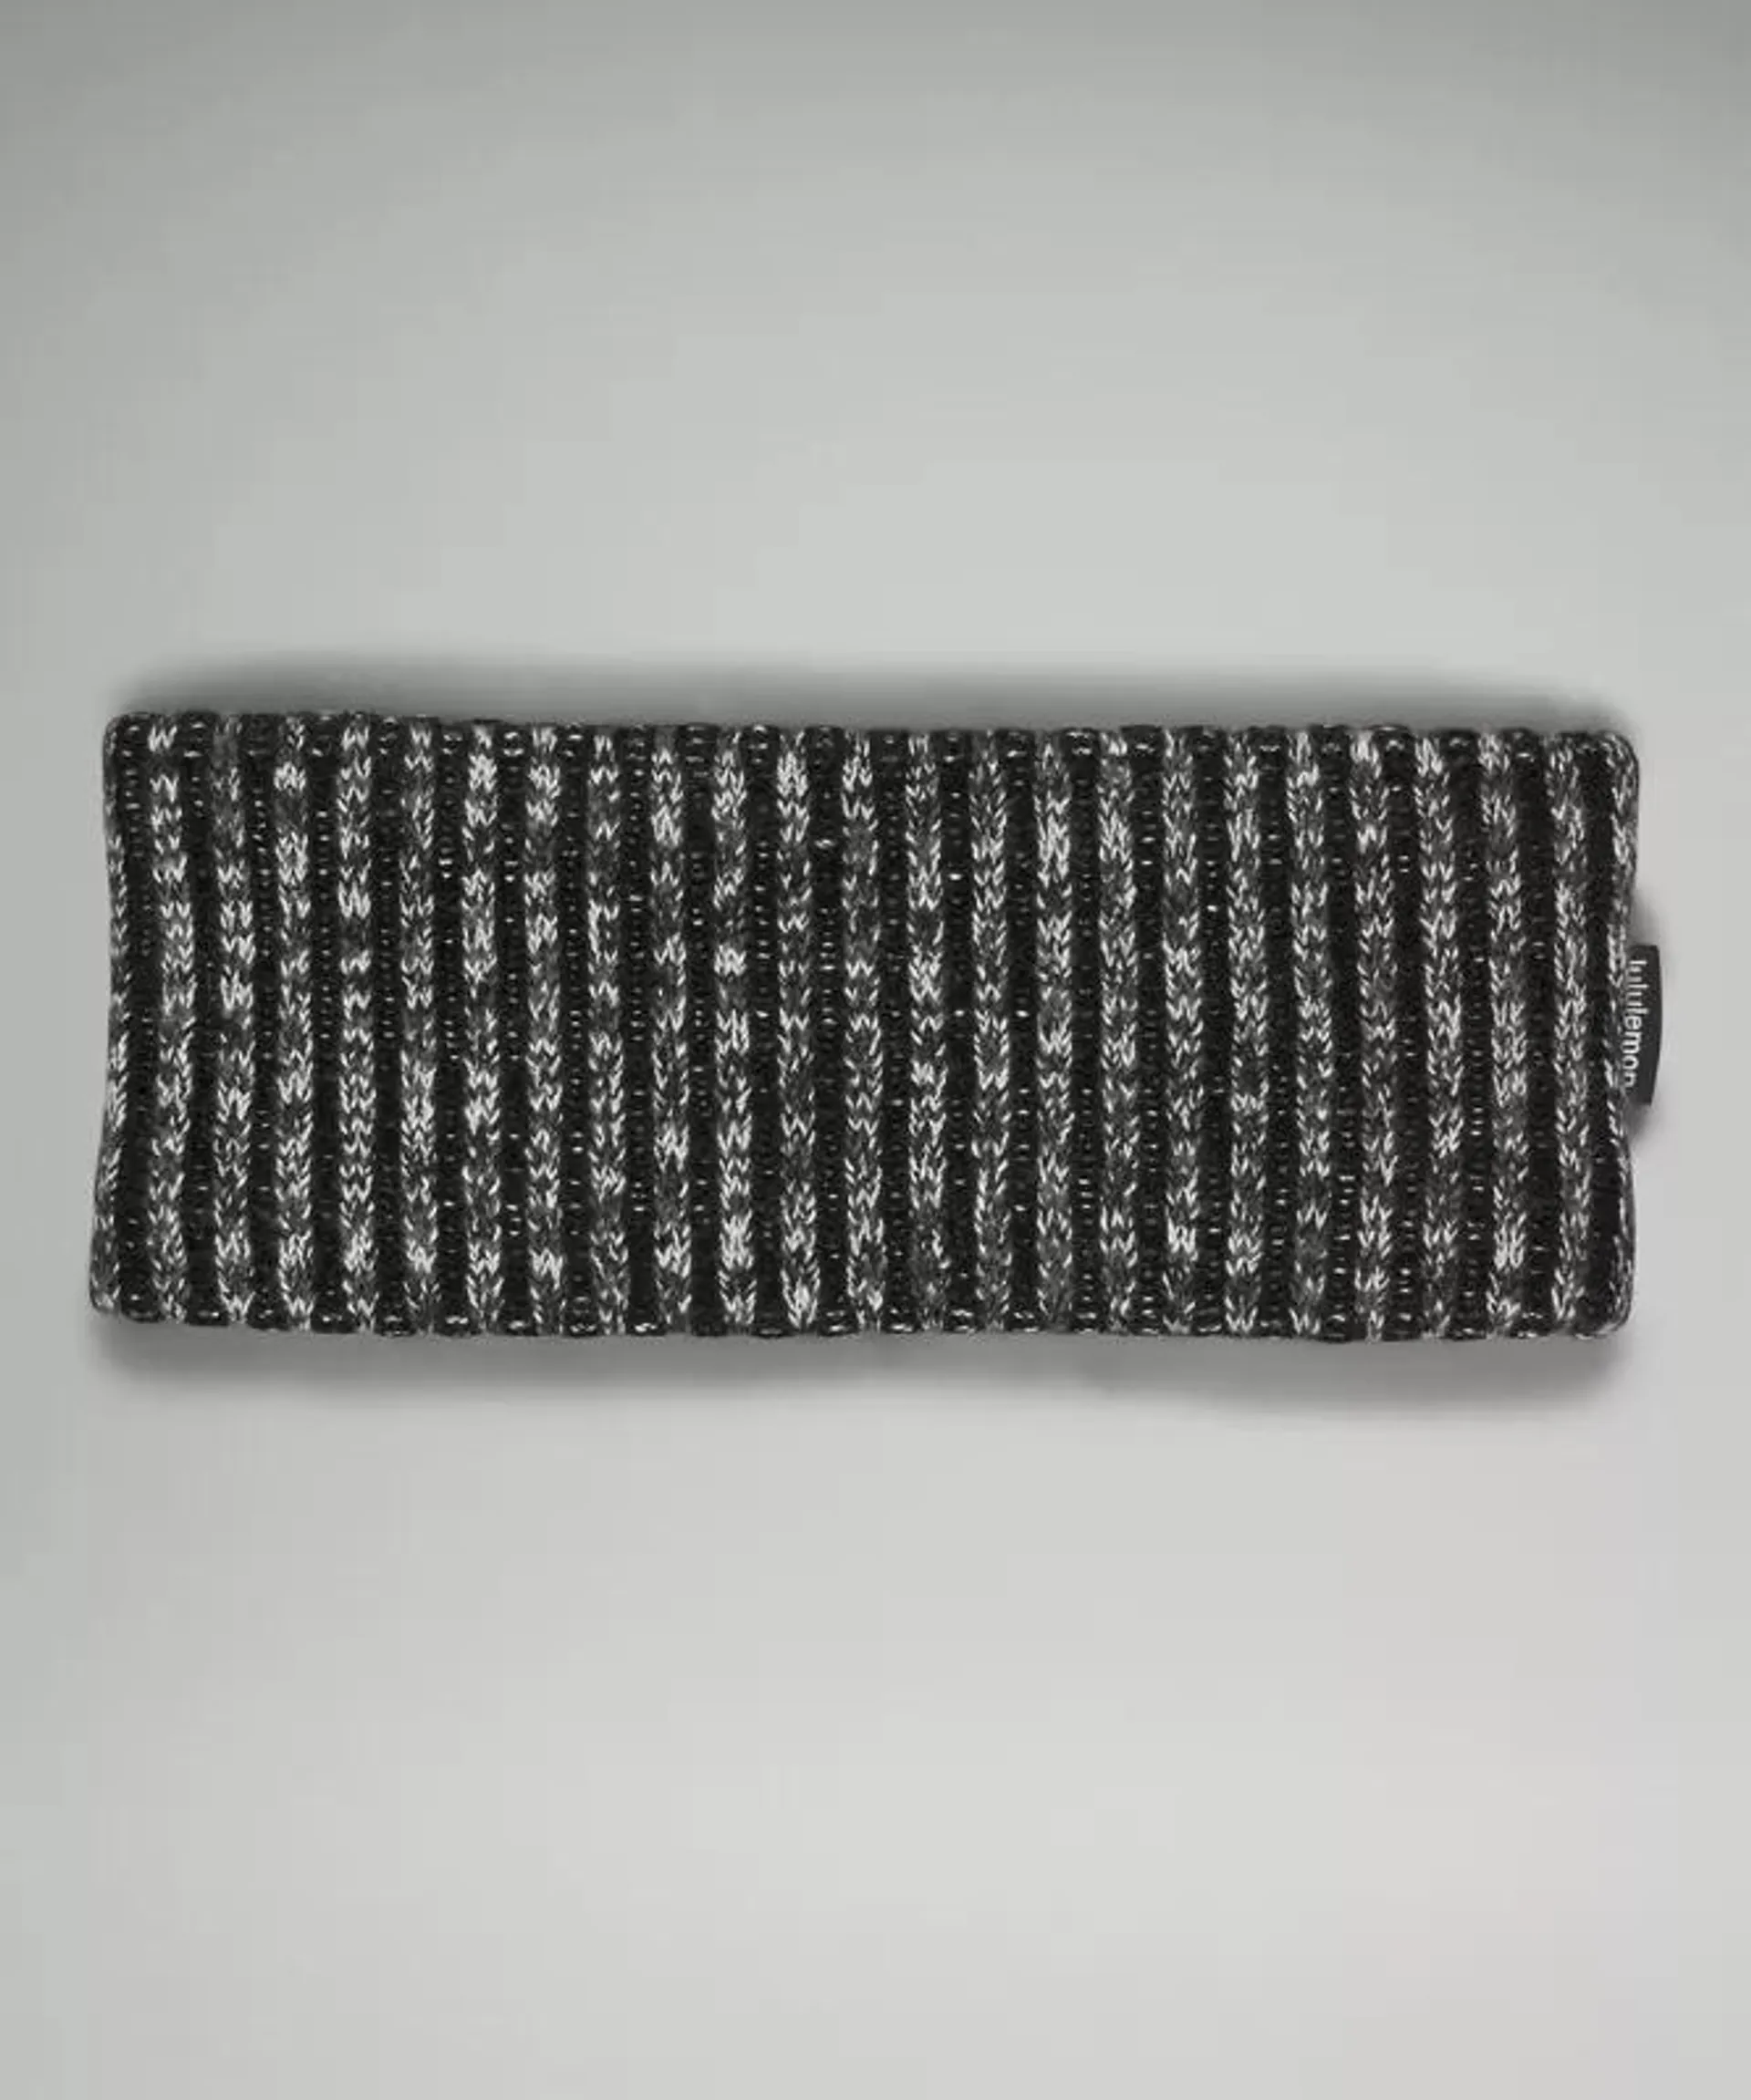 Women's Textured Fleece-Lined Knit Ear Warmer